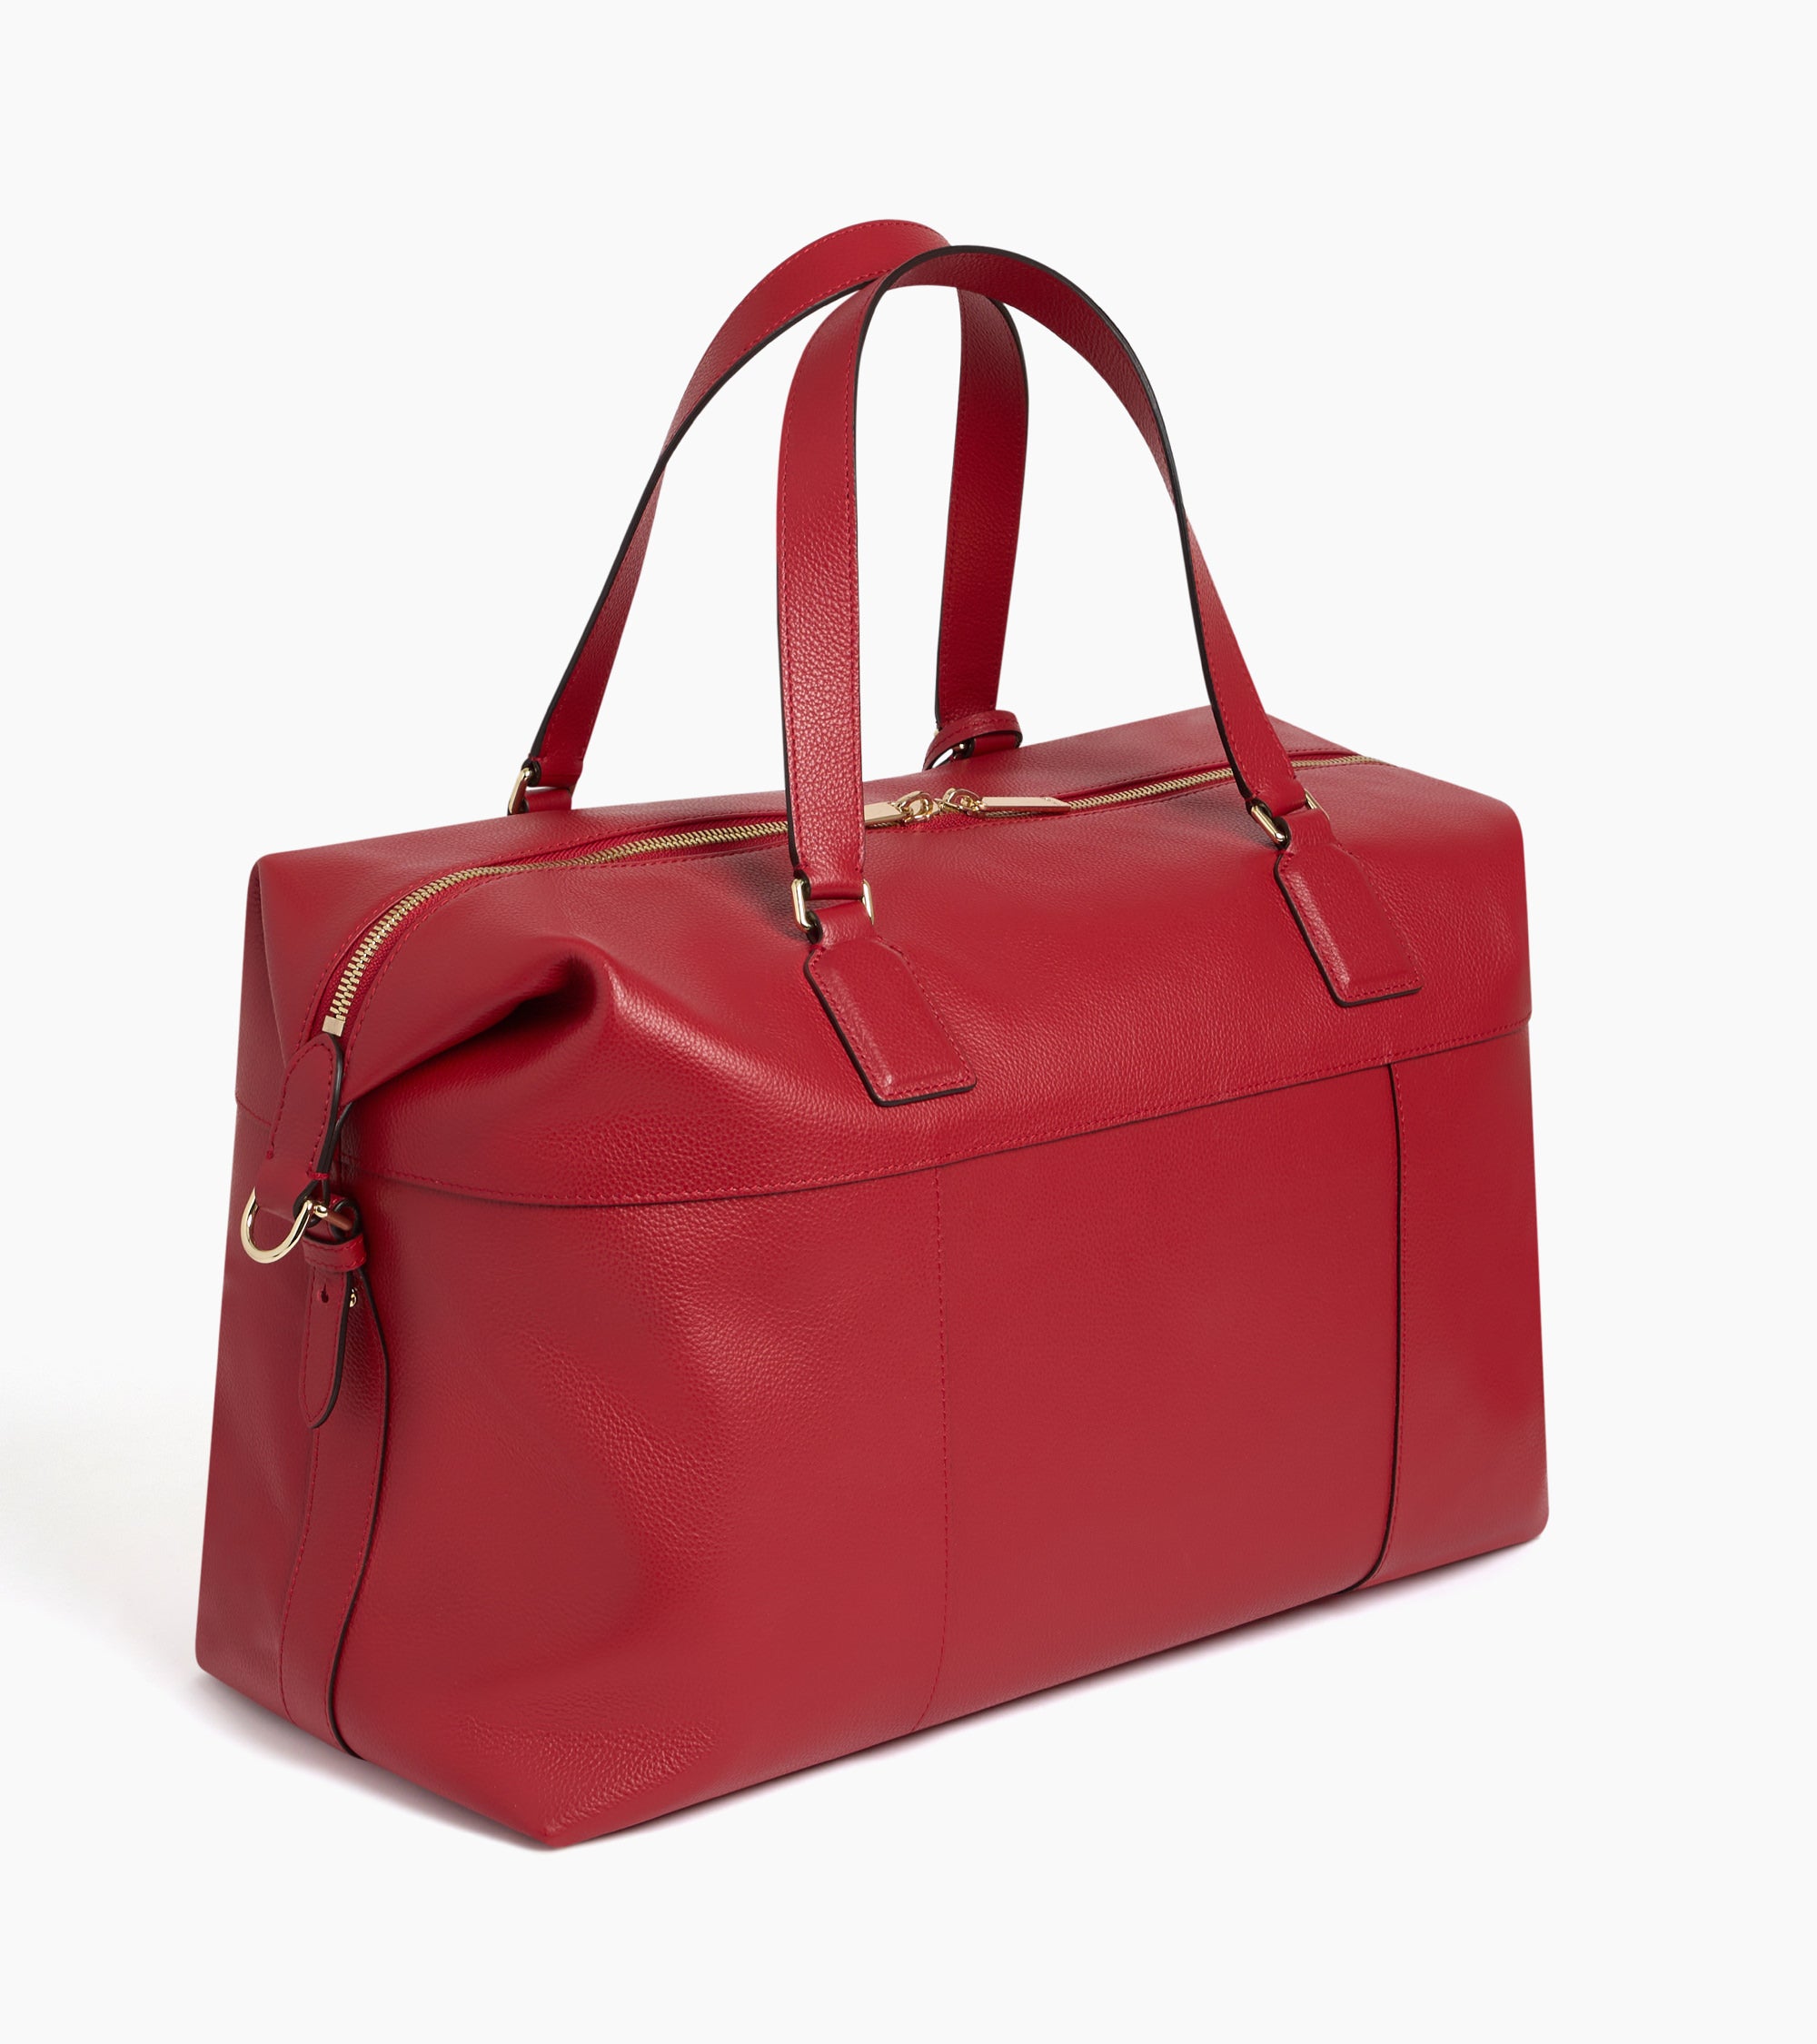 Inès de la Fressange 24-hour travel bag in grained leather